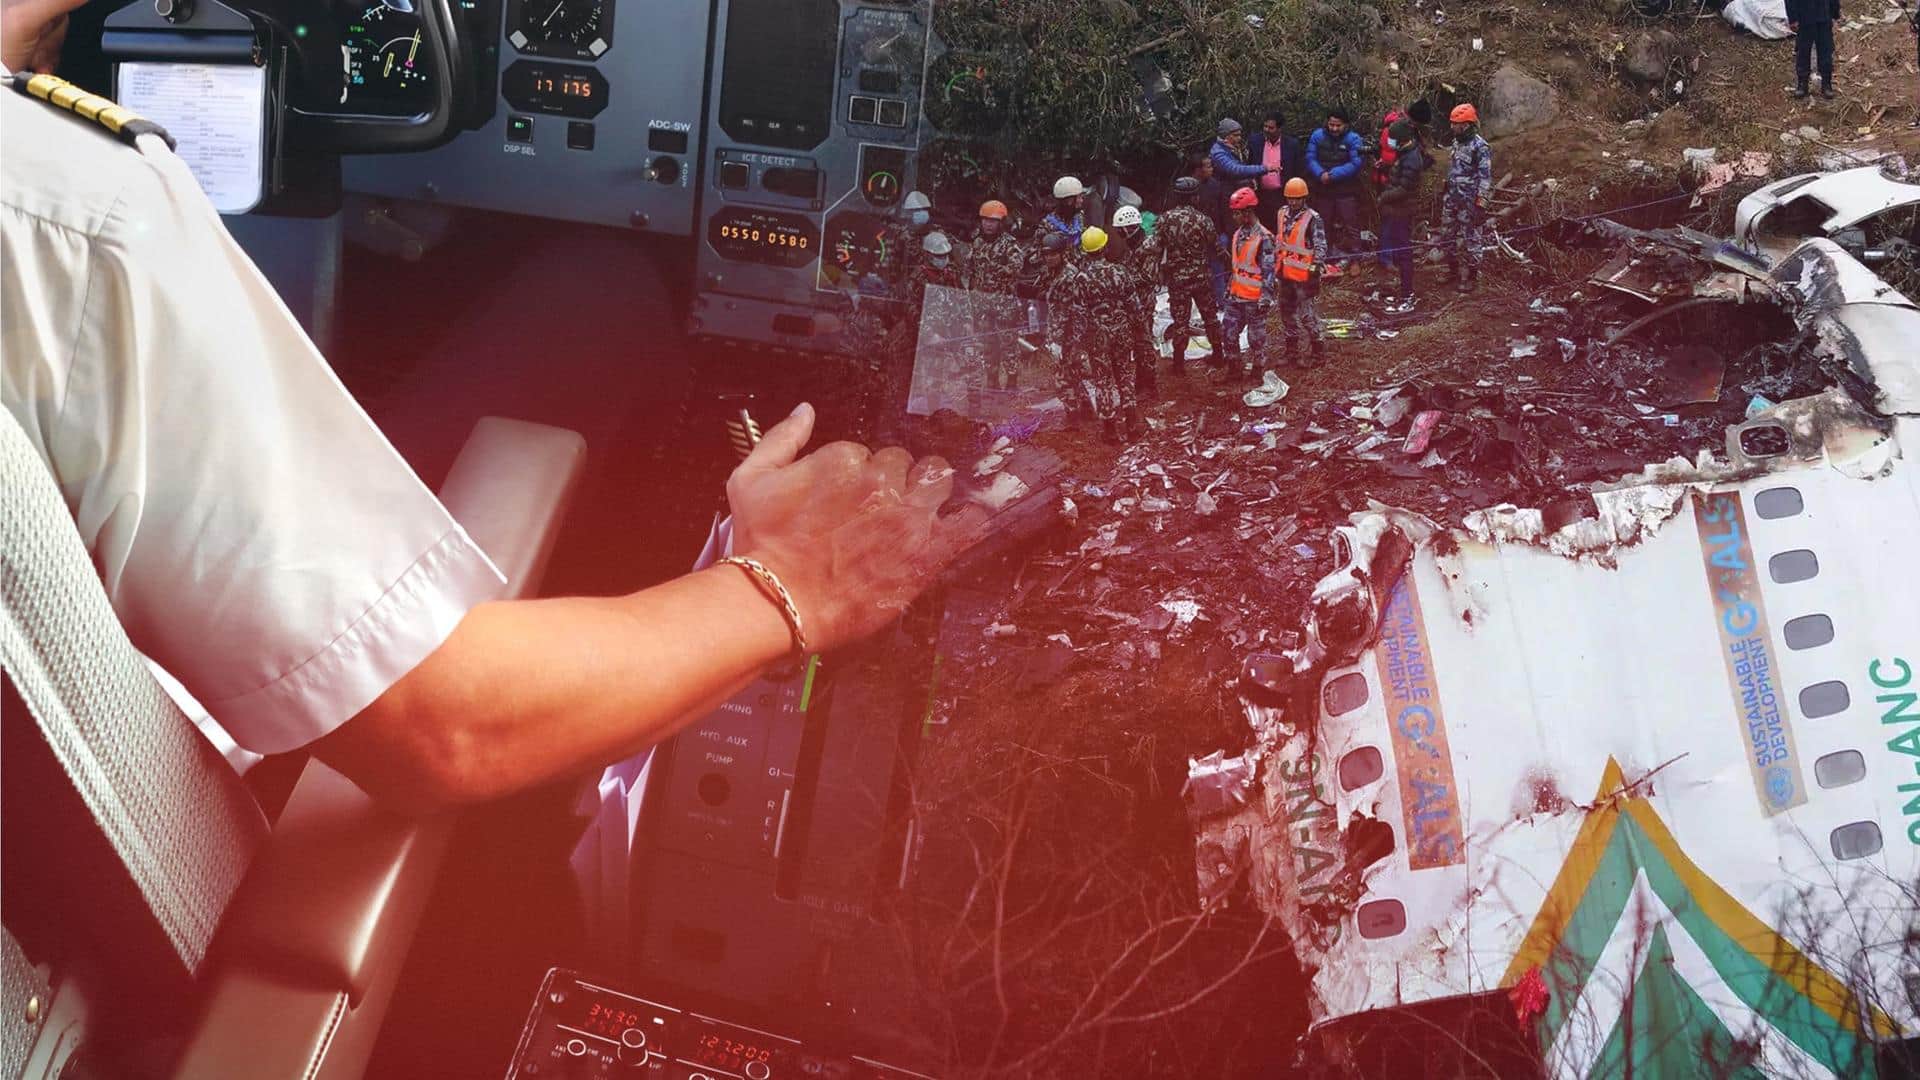 Pilot's error might have caused Nepal plane crash: Investigators